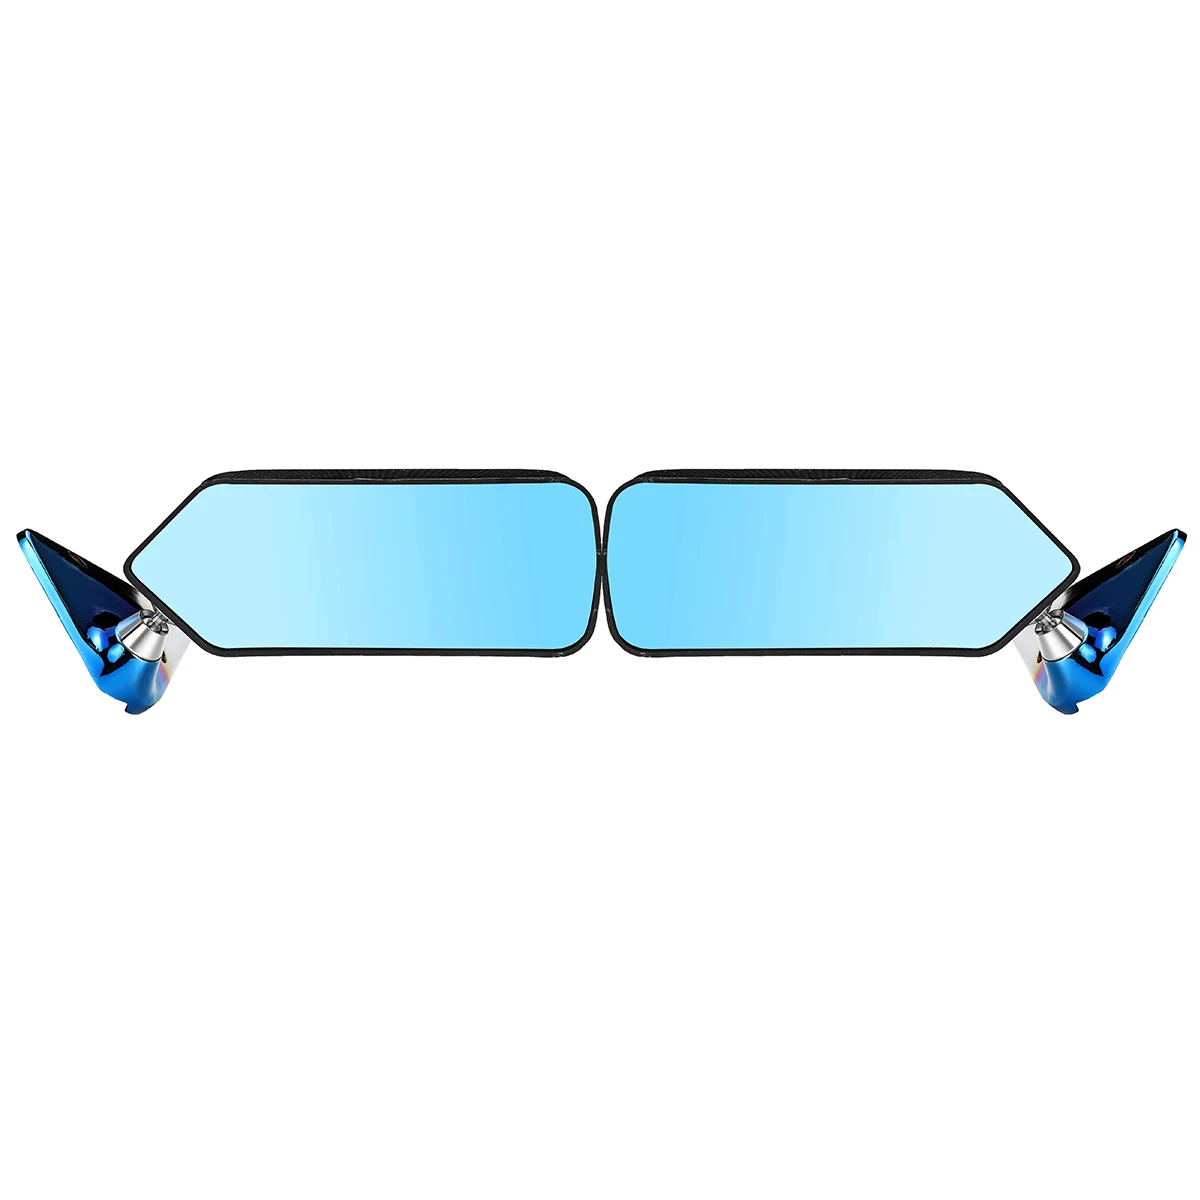 2x de Carro Universal Lado do Espelho Retrovisor Asa Retro Espelho de Metal de Suporte de Espelho do Lado do Conjunto F1 Estilo Fibra de Carbono Olhar Azul